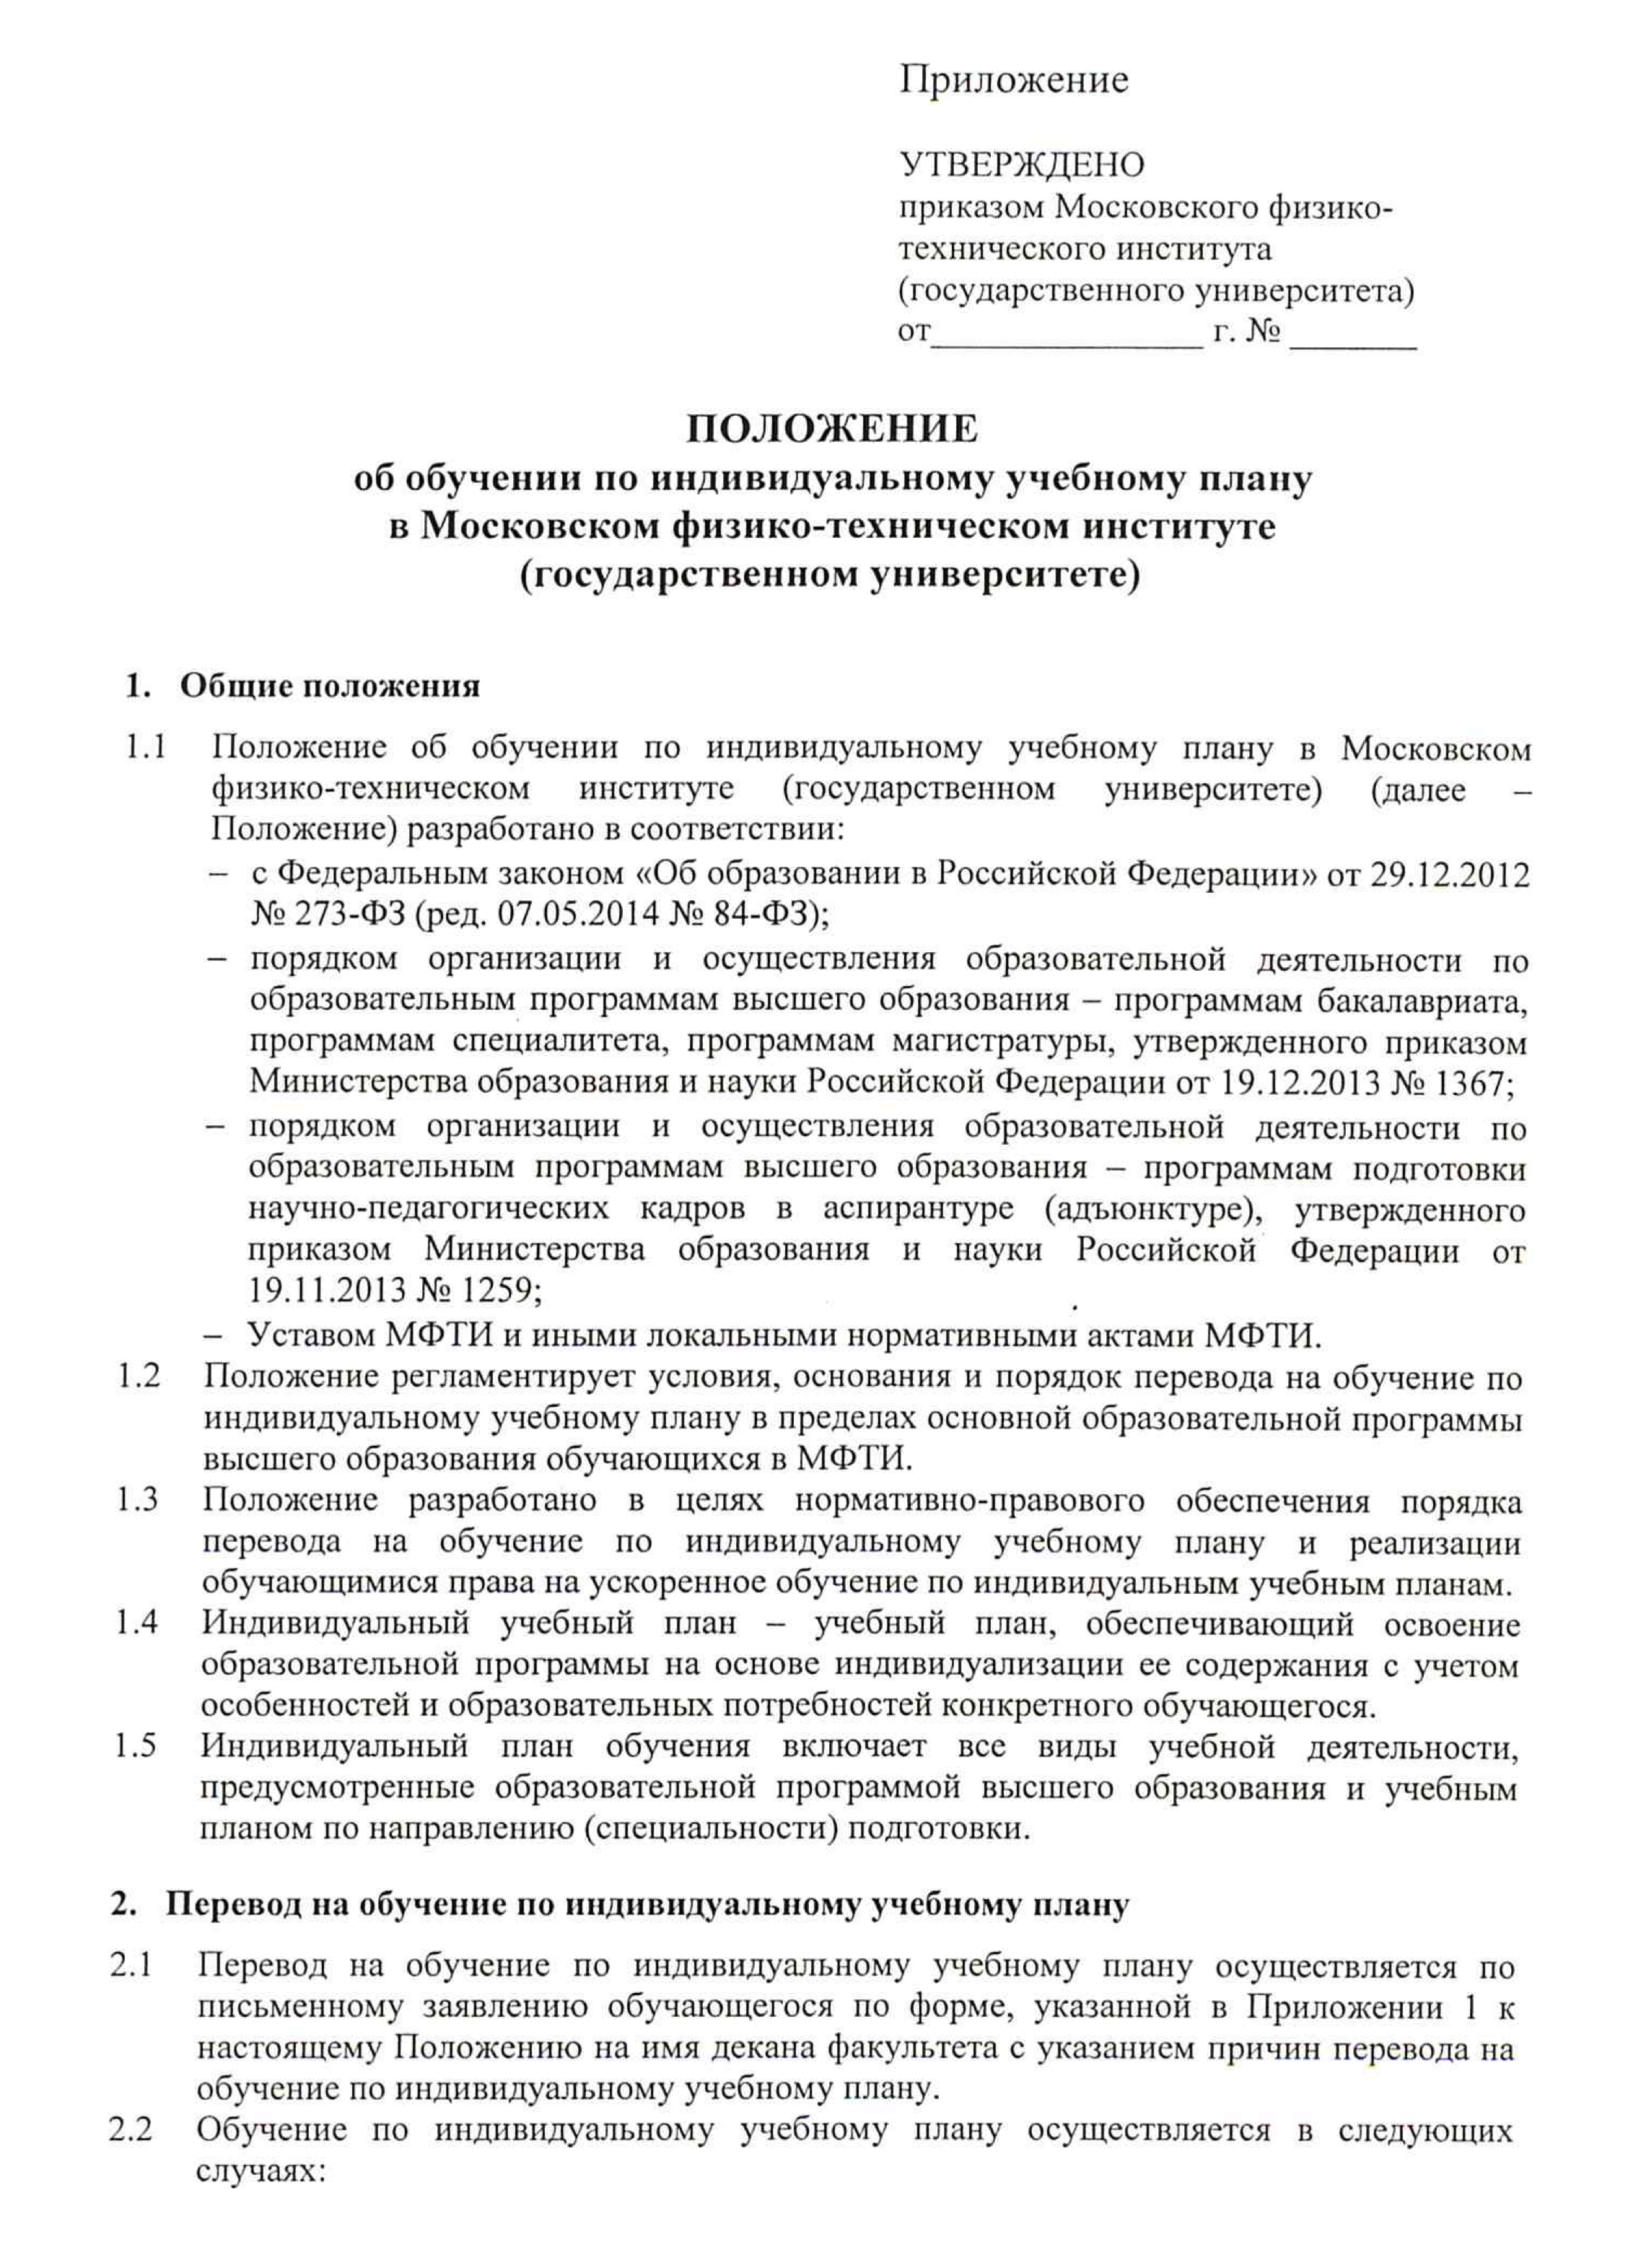 Например, вот положение об обучении по индивидуальному учебному плану в МФТИ. Источник: mipt.ru